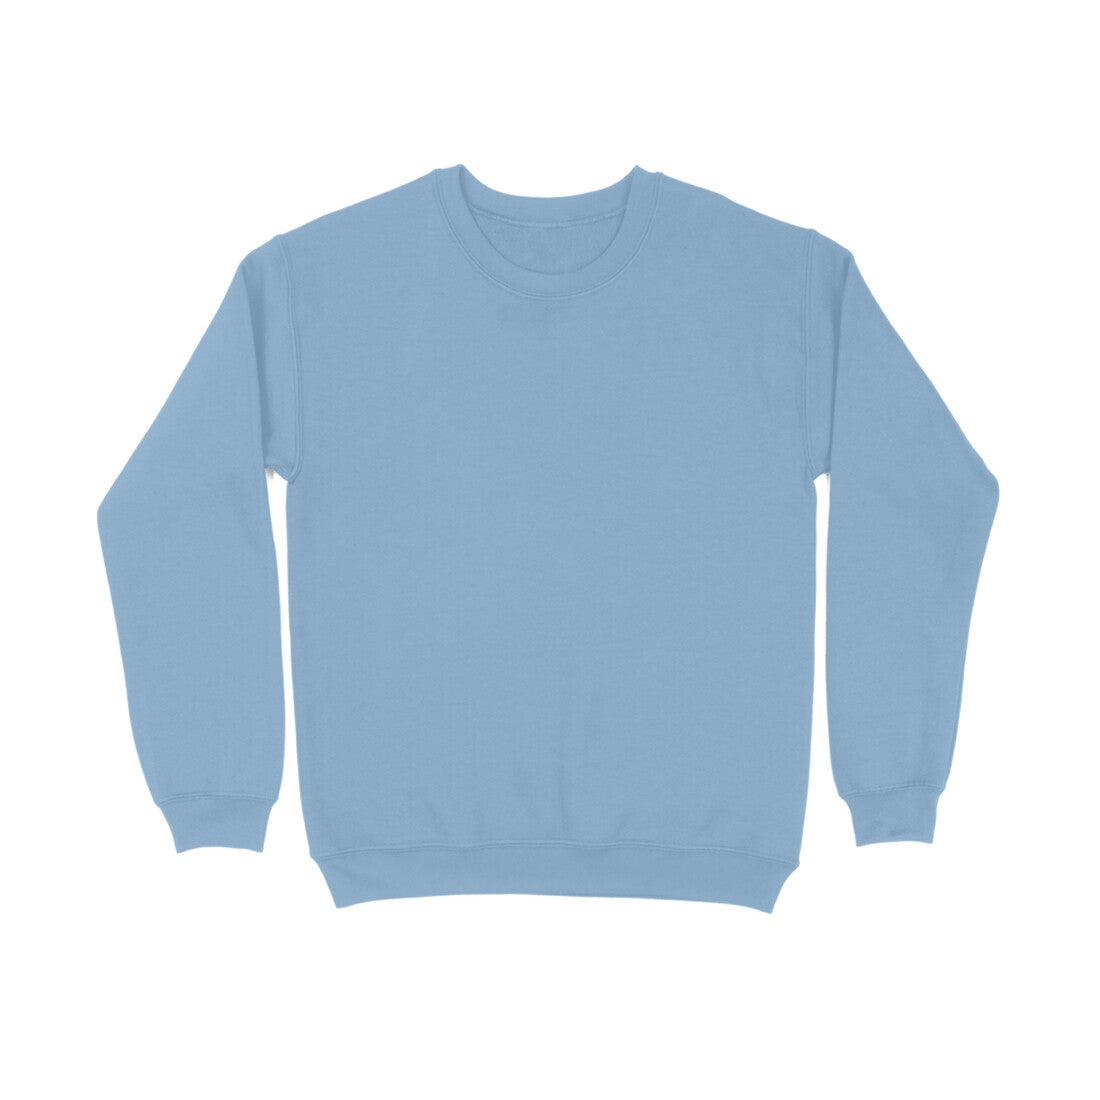 Men's Baby Blue Sweatshirt